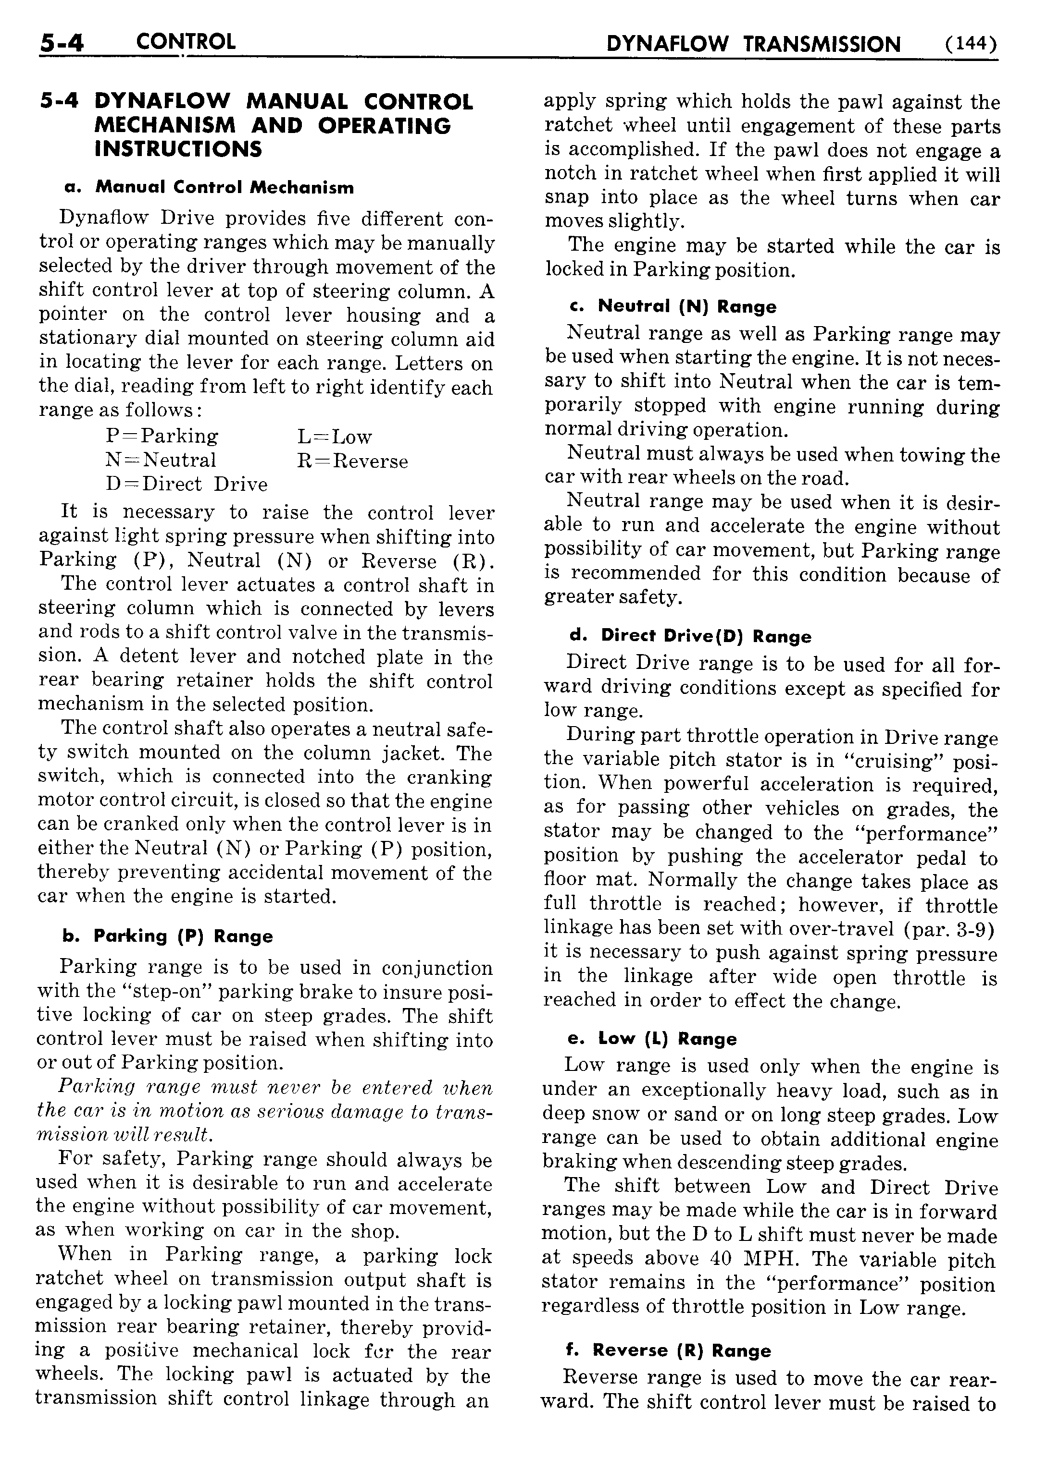 n_06 1955 Buick Shop Manual - Dynaflow-004-004.jpg